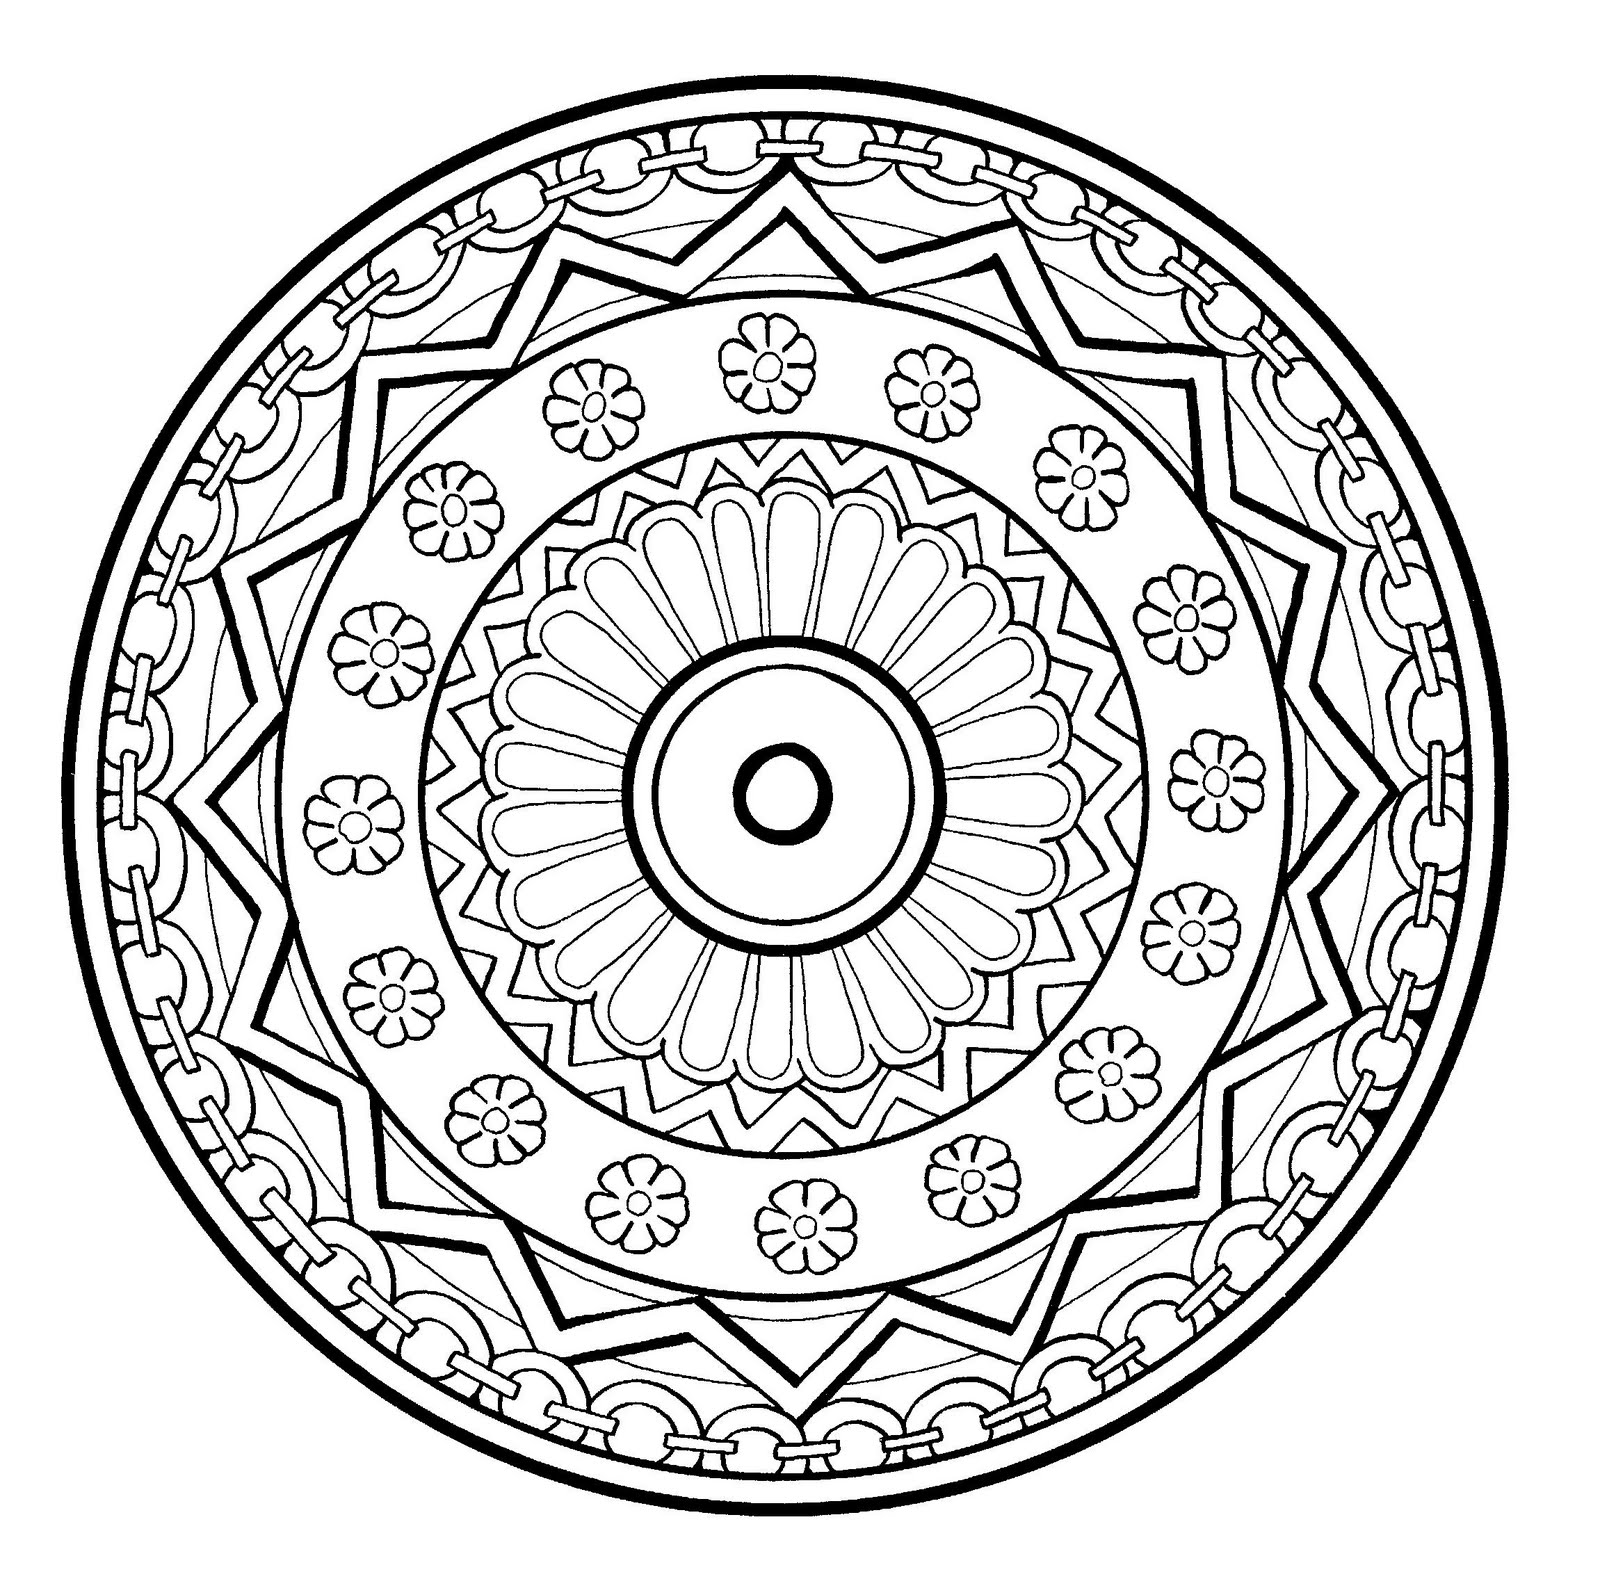 Wunderschönes Mandala mit Spirale, ziemlich blumig, in dem verschiedene Elemente wie Blumen, geometrische Formen oder auch Ketten rundherum abgebildet sind. Normales Niveau.